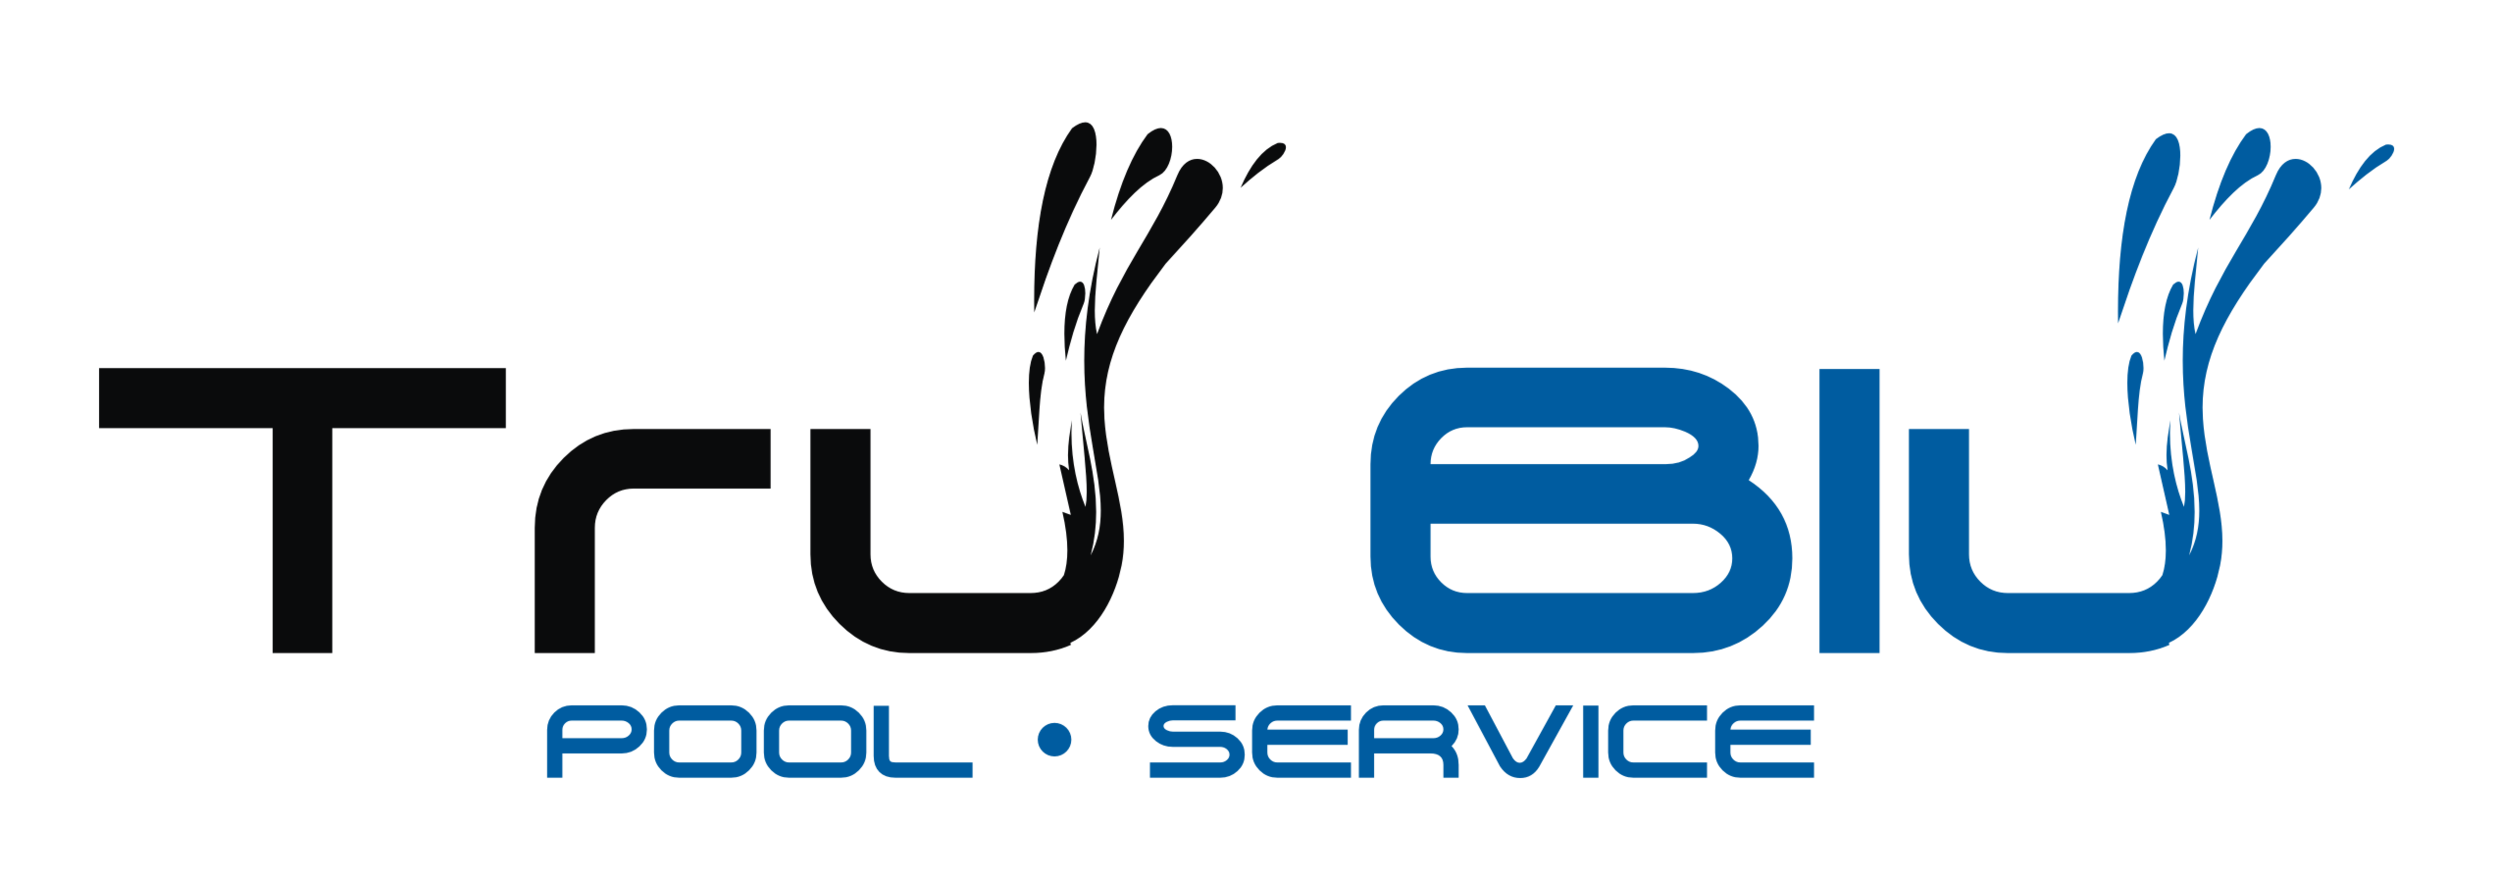 TruBlu Pool Service